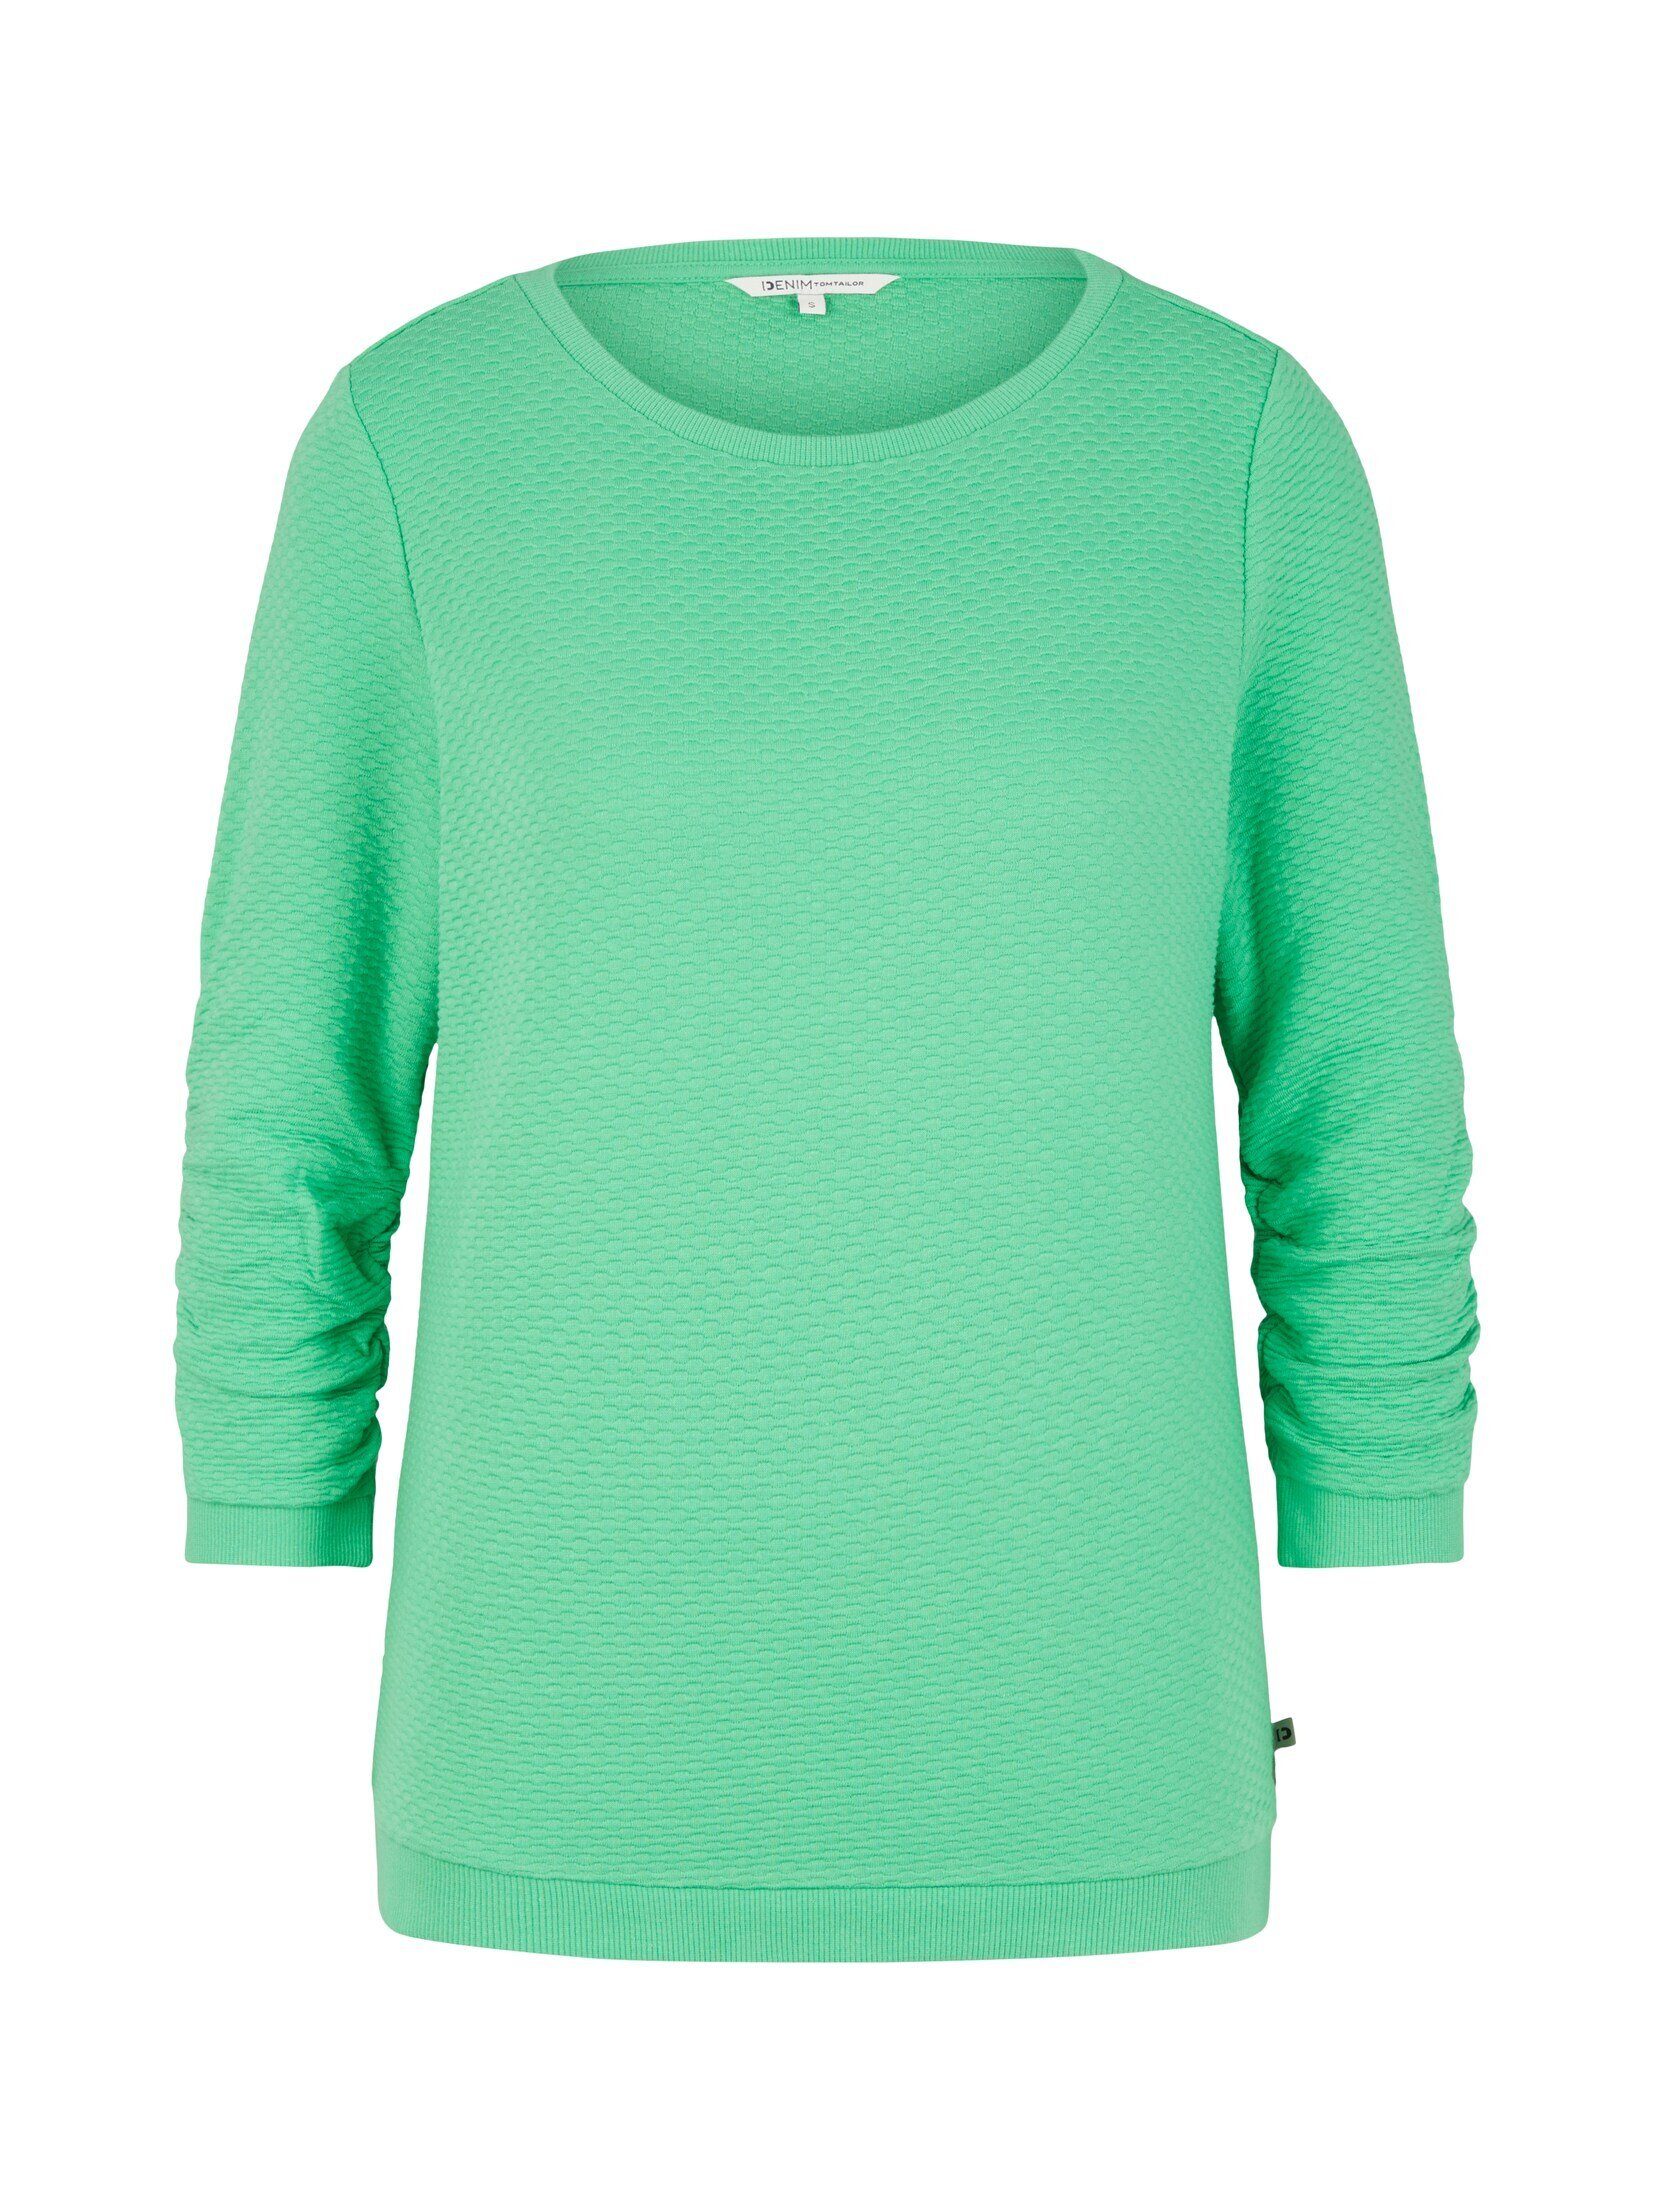 Denim strong Strukturiertes TOM Sweatshirt TAILOR green Sweatshirt